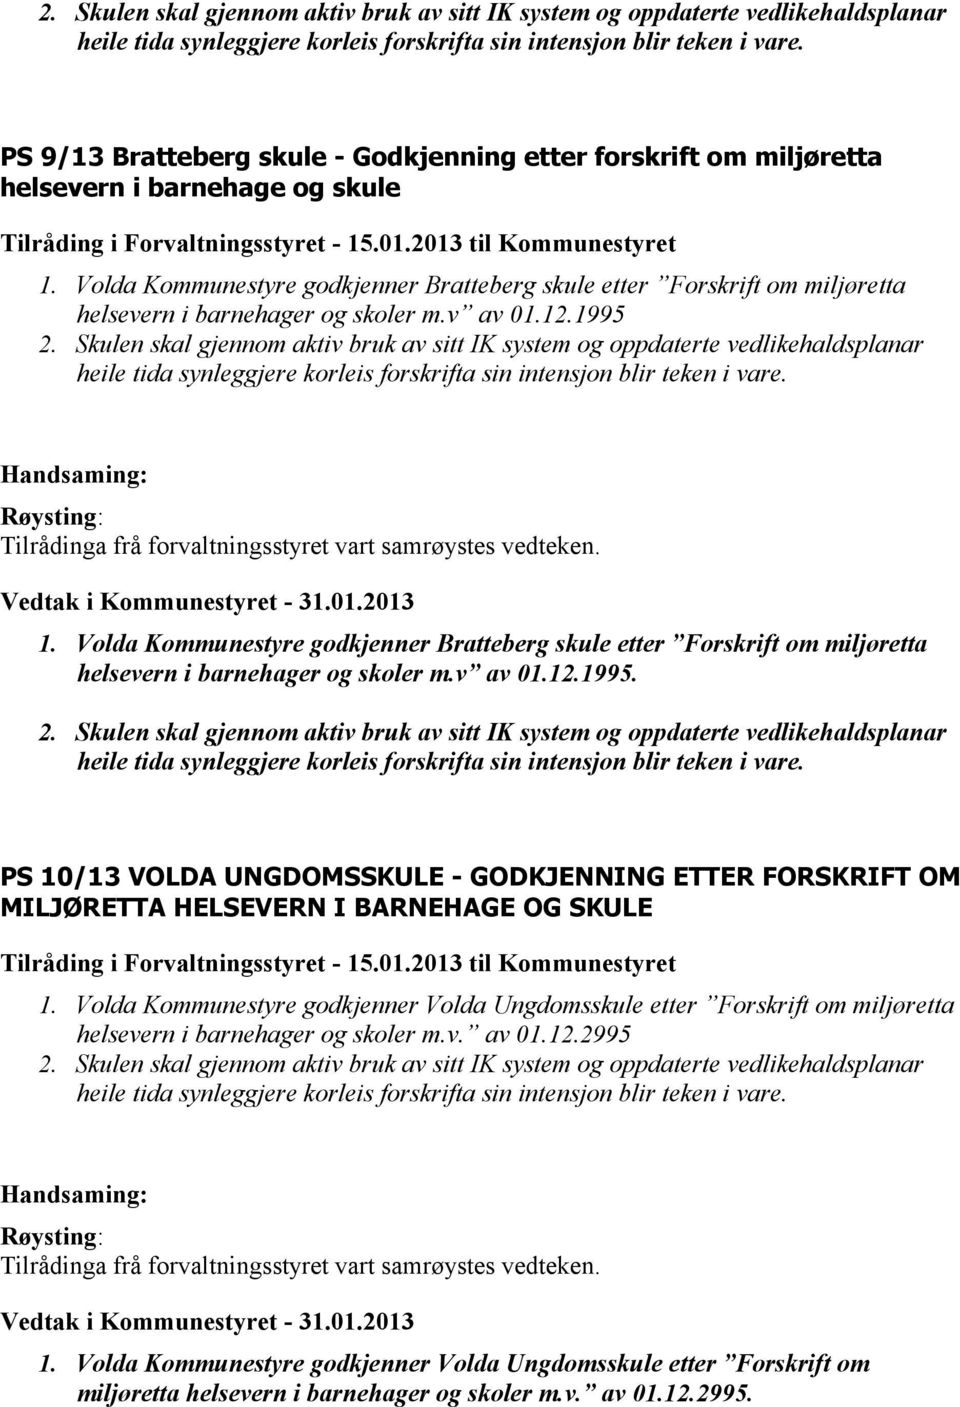 Volda Kommunestyre godkjenner Bratteberg skule etter Forskrift om miljøretta helsevern i barnehager og skoler m.v av 01.12.1995  Tilrådinga frå forvaltningsstyret vart samrøystes vedteken. 1.